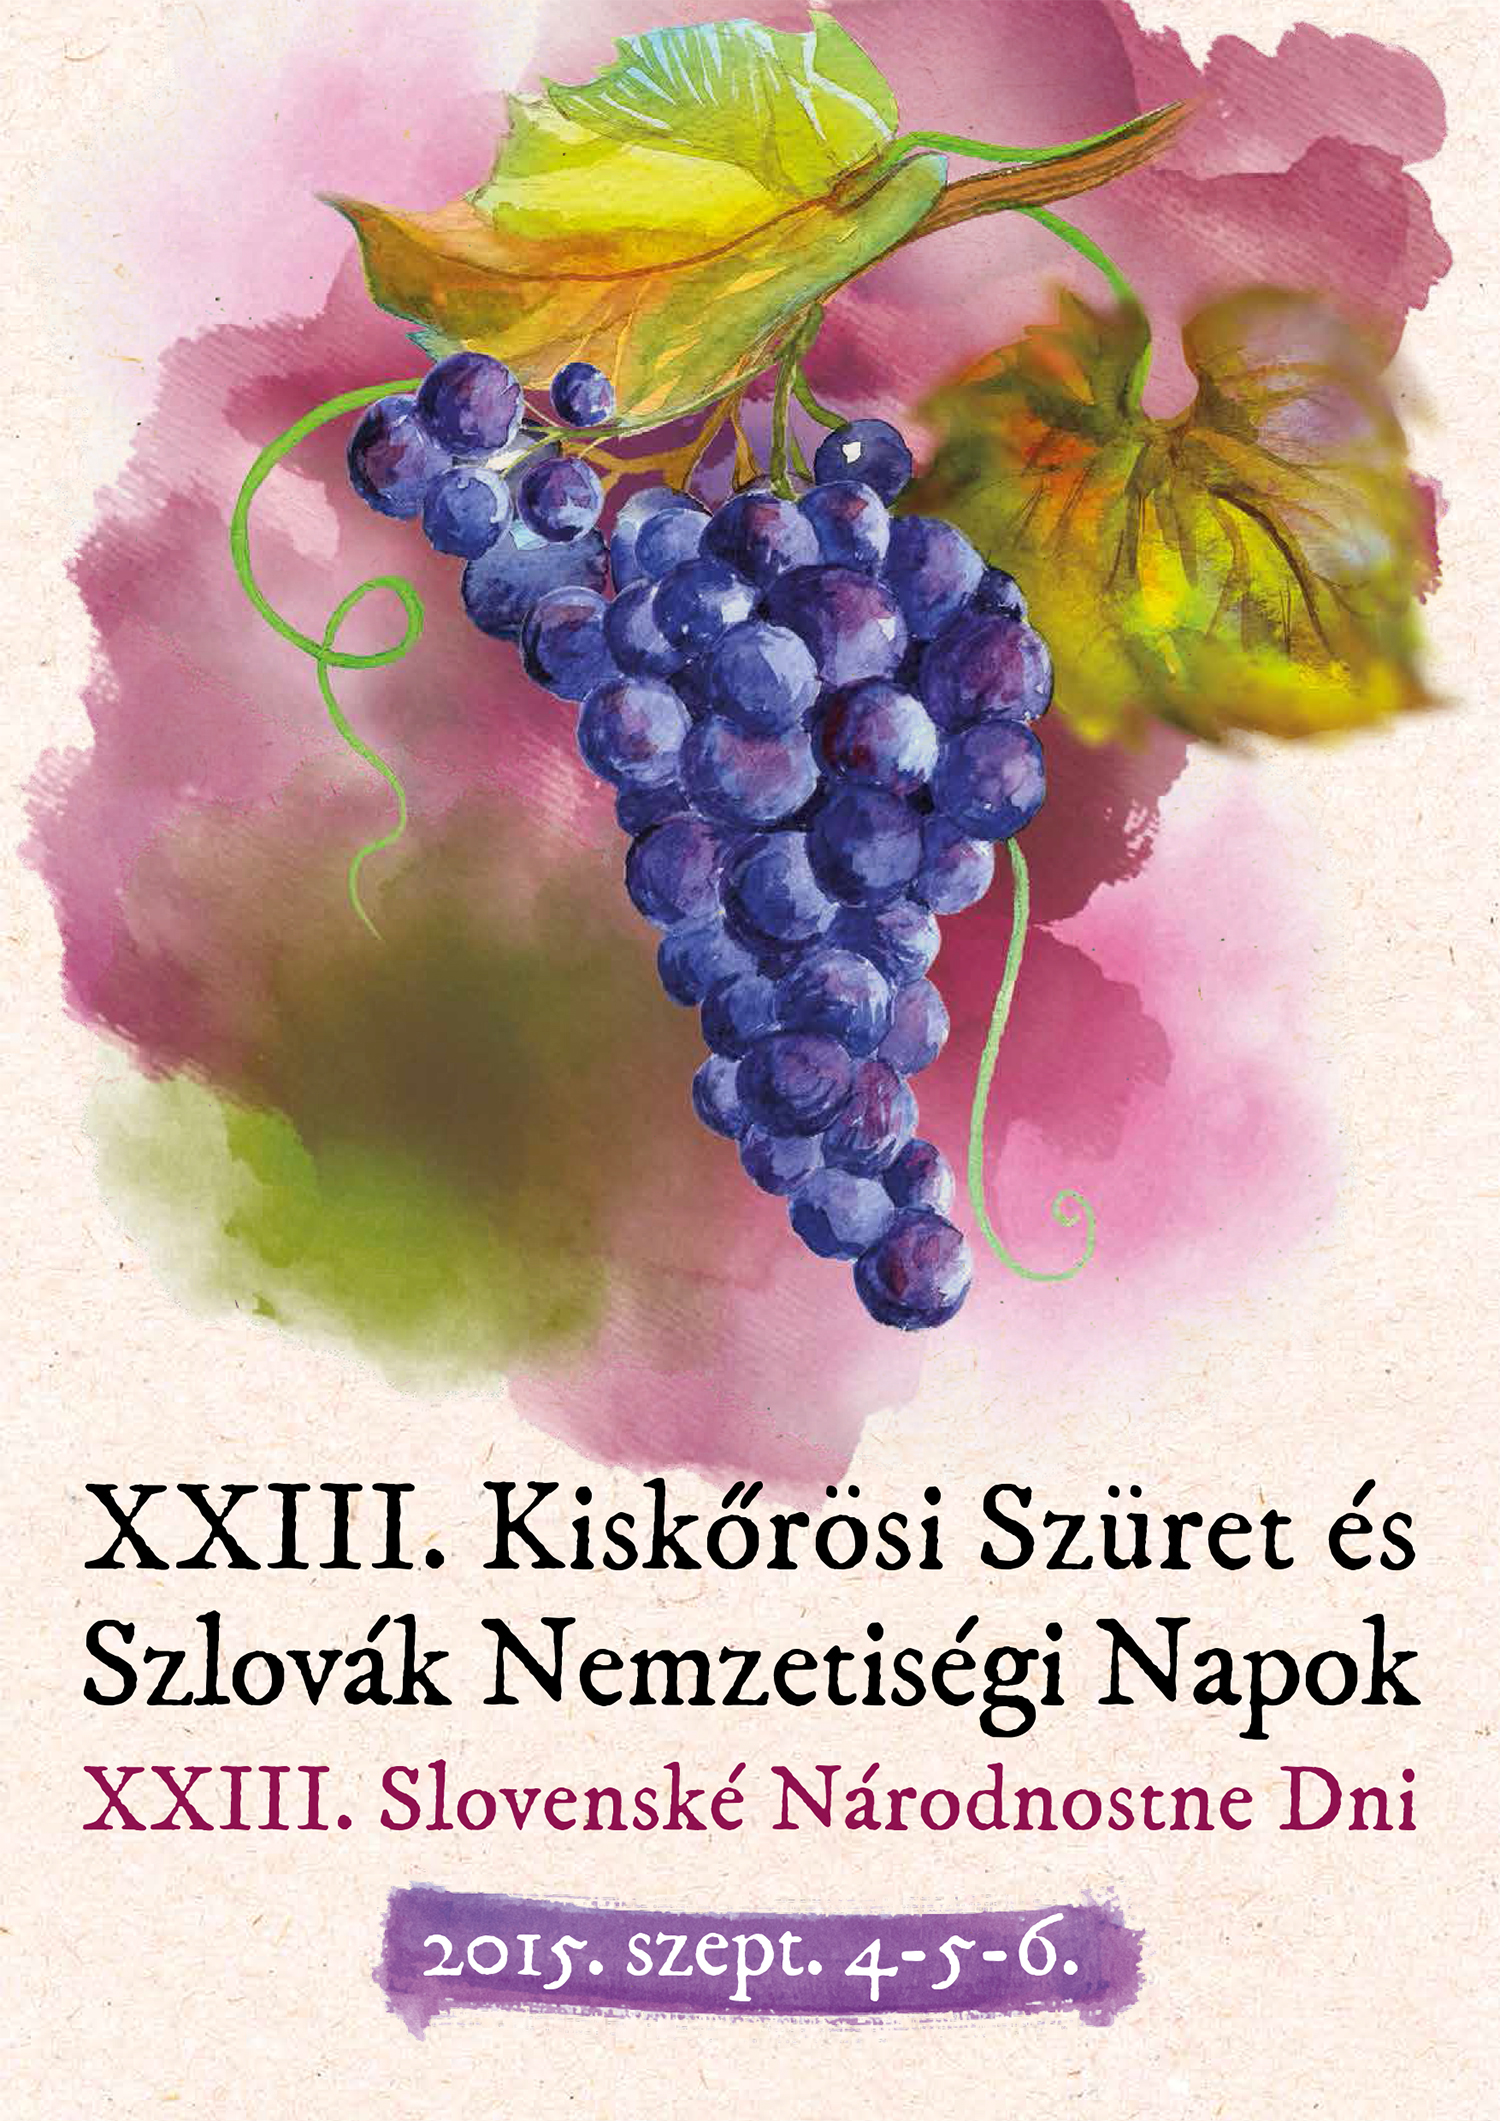 XXIII. Oberaky a Slovensk nrodnostn dni v Malom Kerei 2015